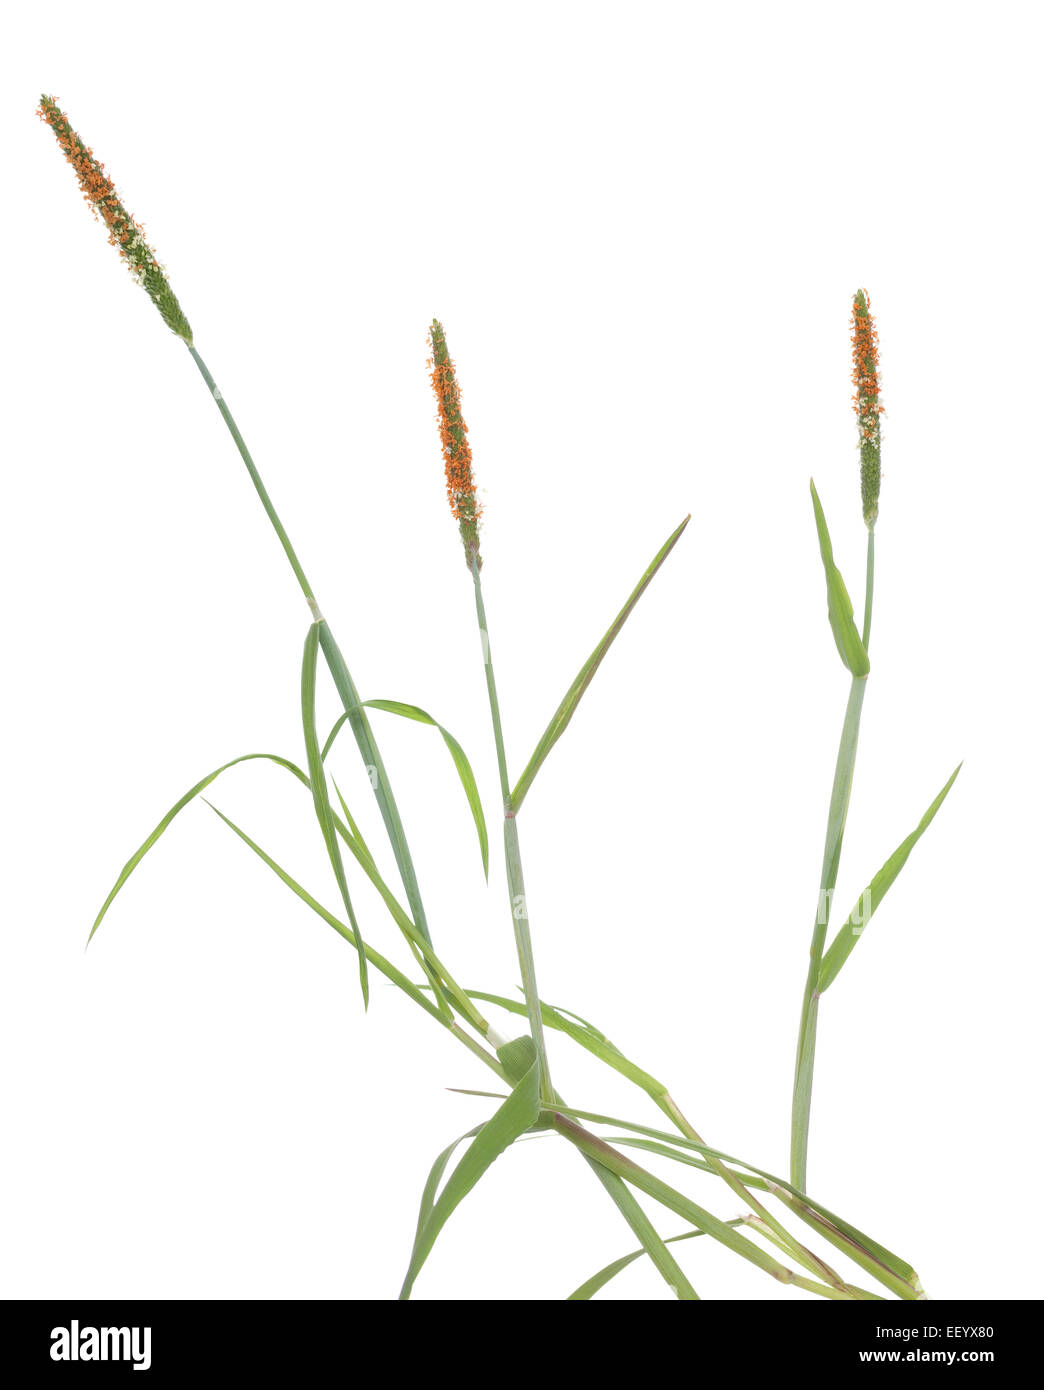 tuft grass(Alopecurus aequalis) on white background Stock Photo